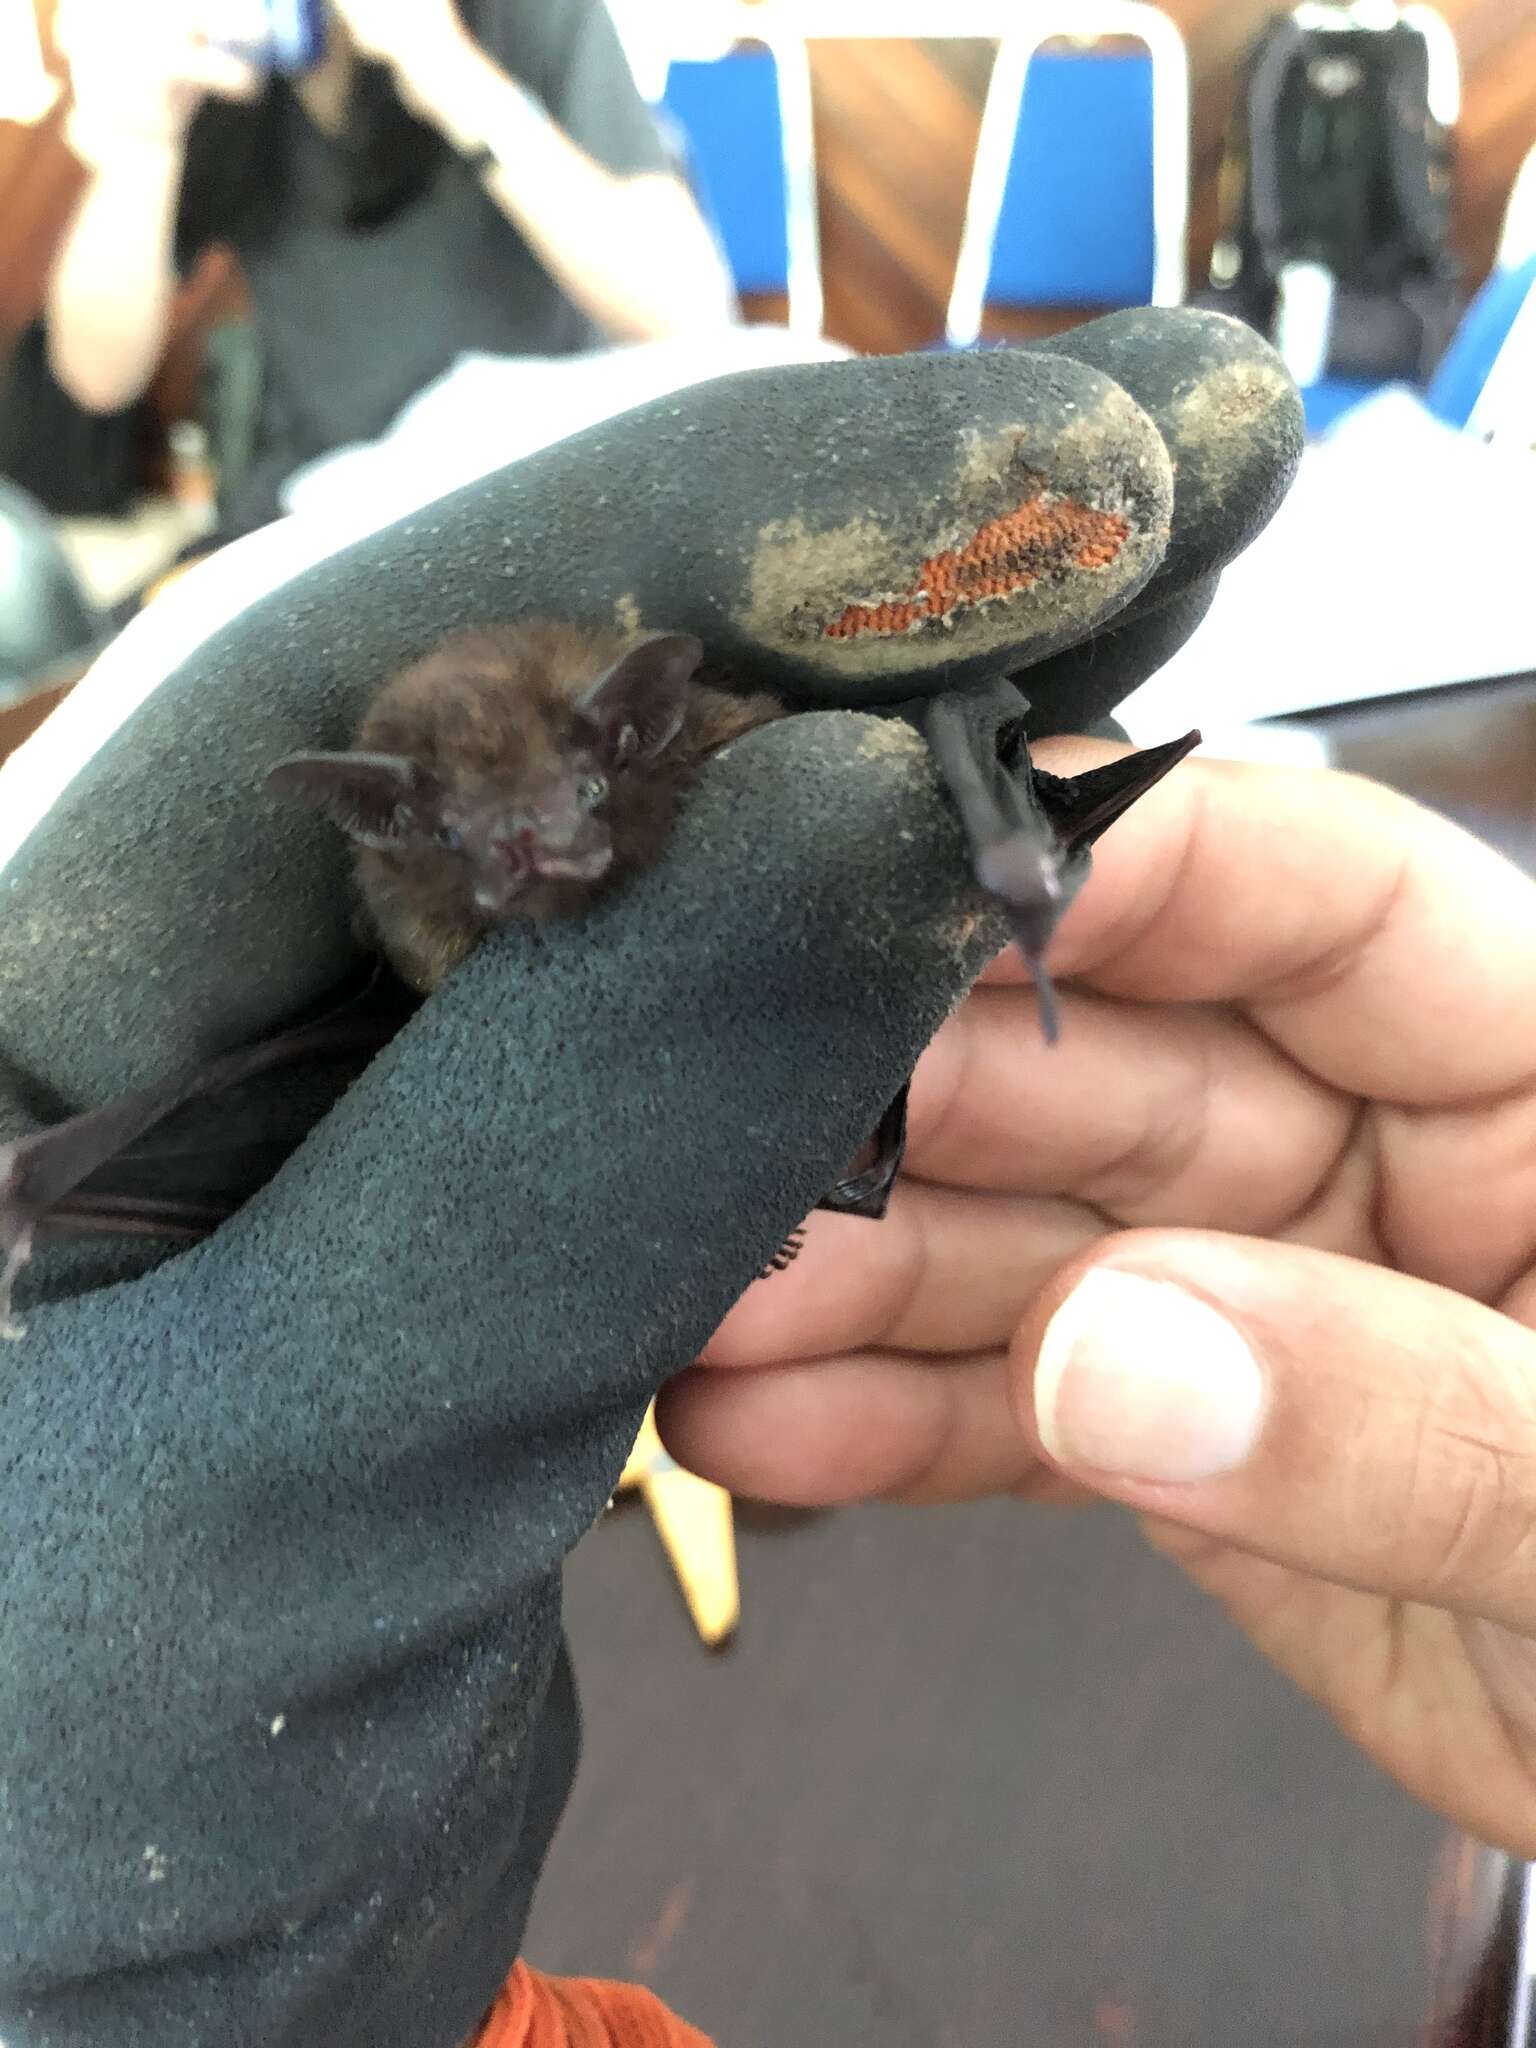 Image of Philippine Sheath-tailed Bat